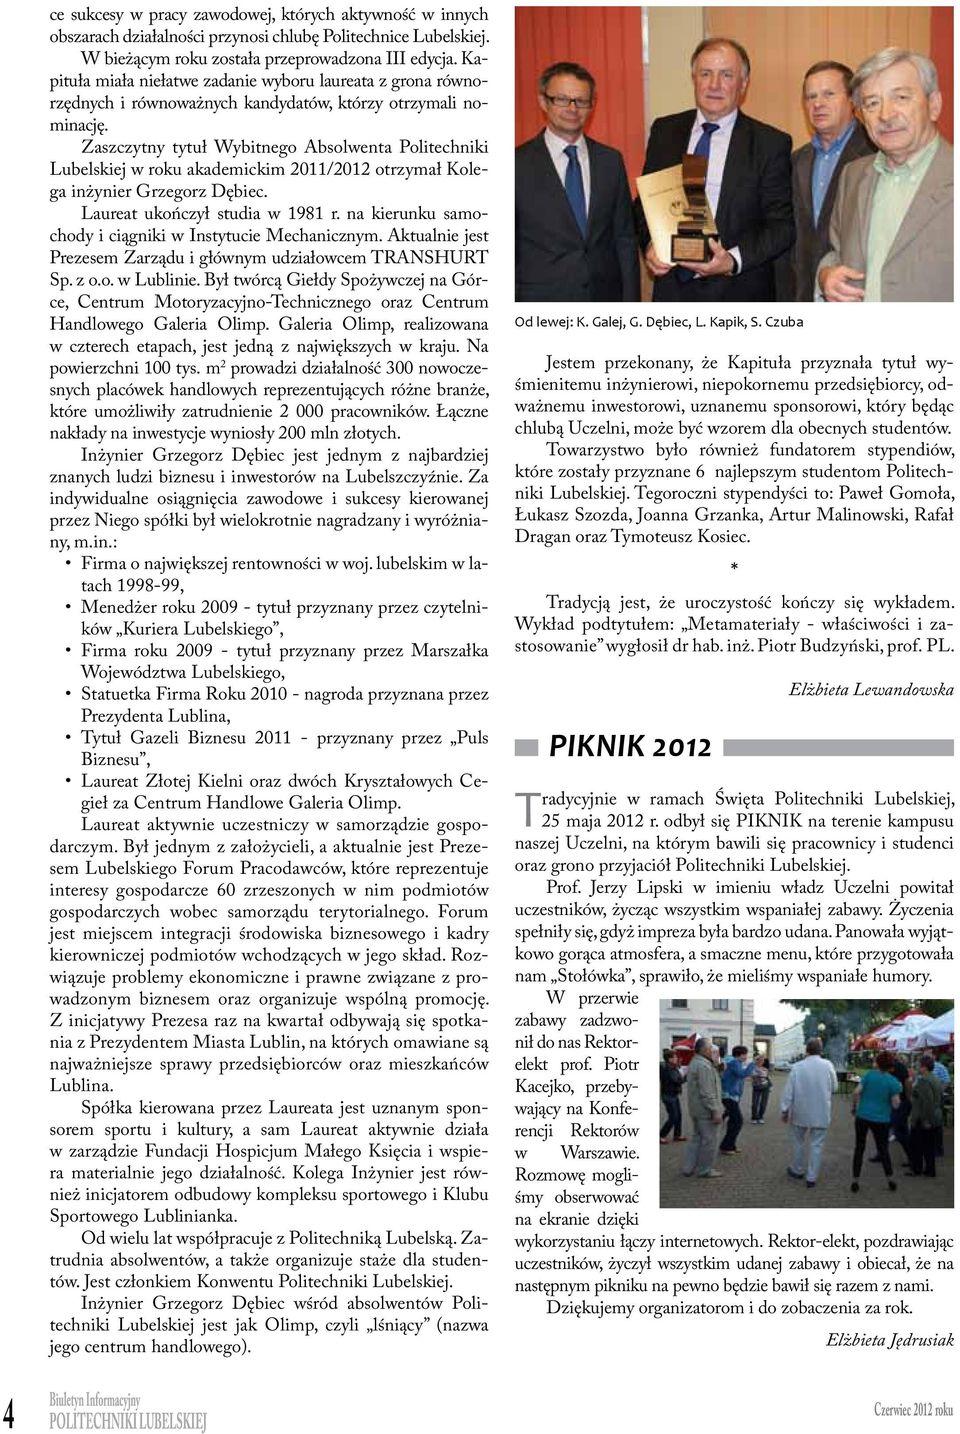 Zaszczytny tytuł Wybtnego Absolenta PLubelskej rzedmotem roku obrad akademckm były stępujące 2011/2012 spray otrzymał zagadne: Grzegorz Dębec.